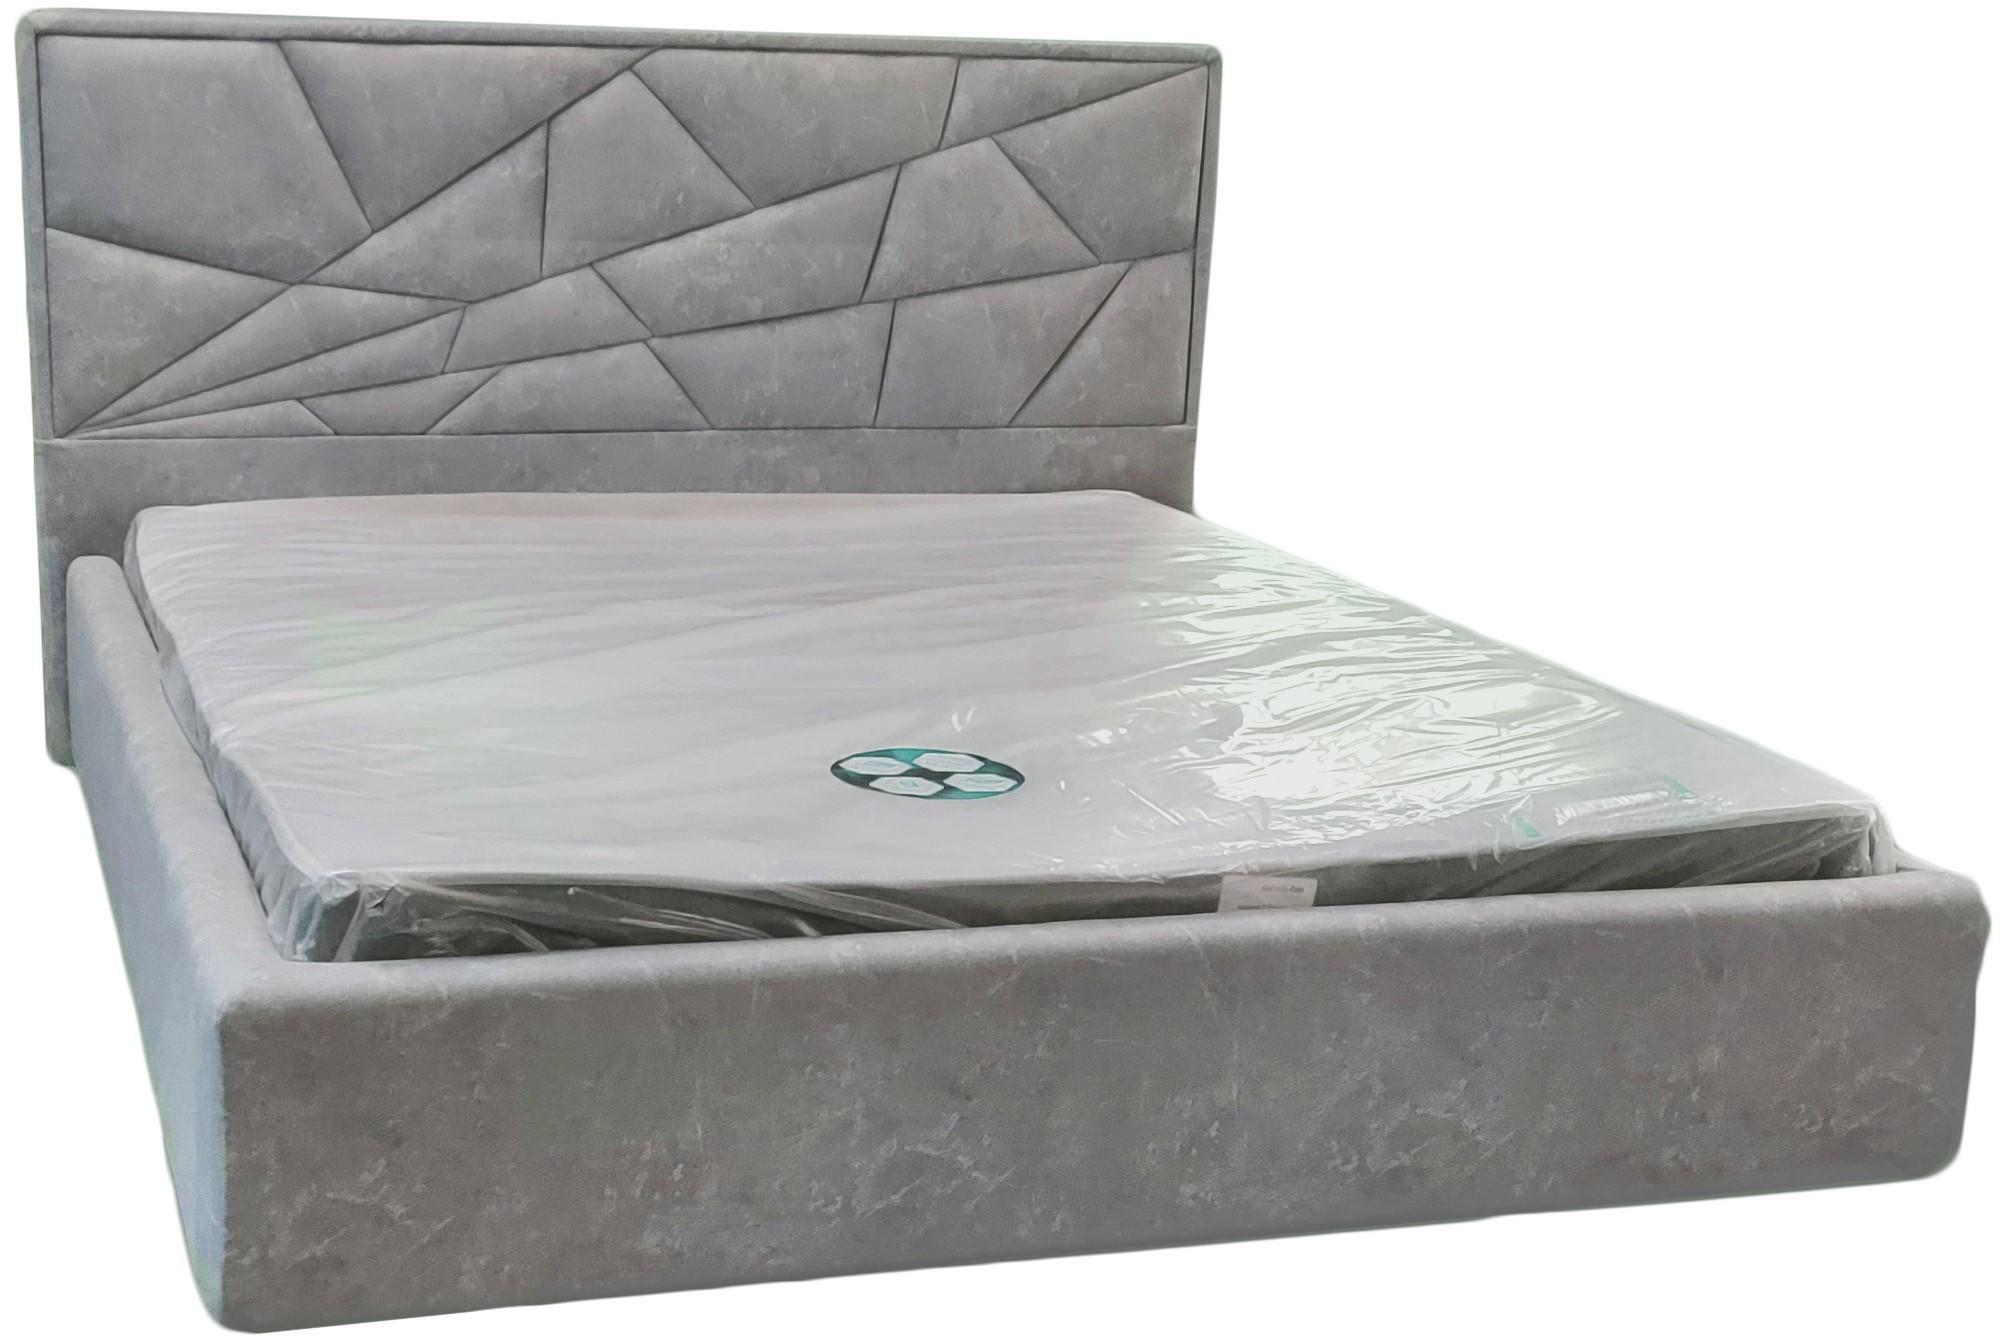 Кровать двуспальная BNB Trinidad Premium 160 х 200 см Simple Серый